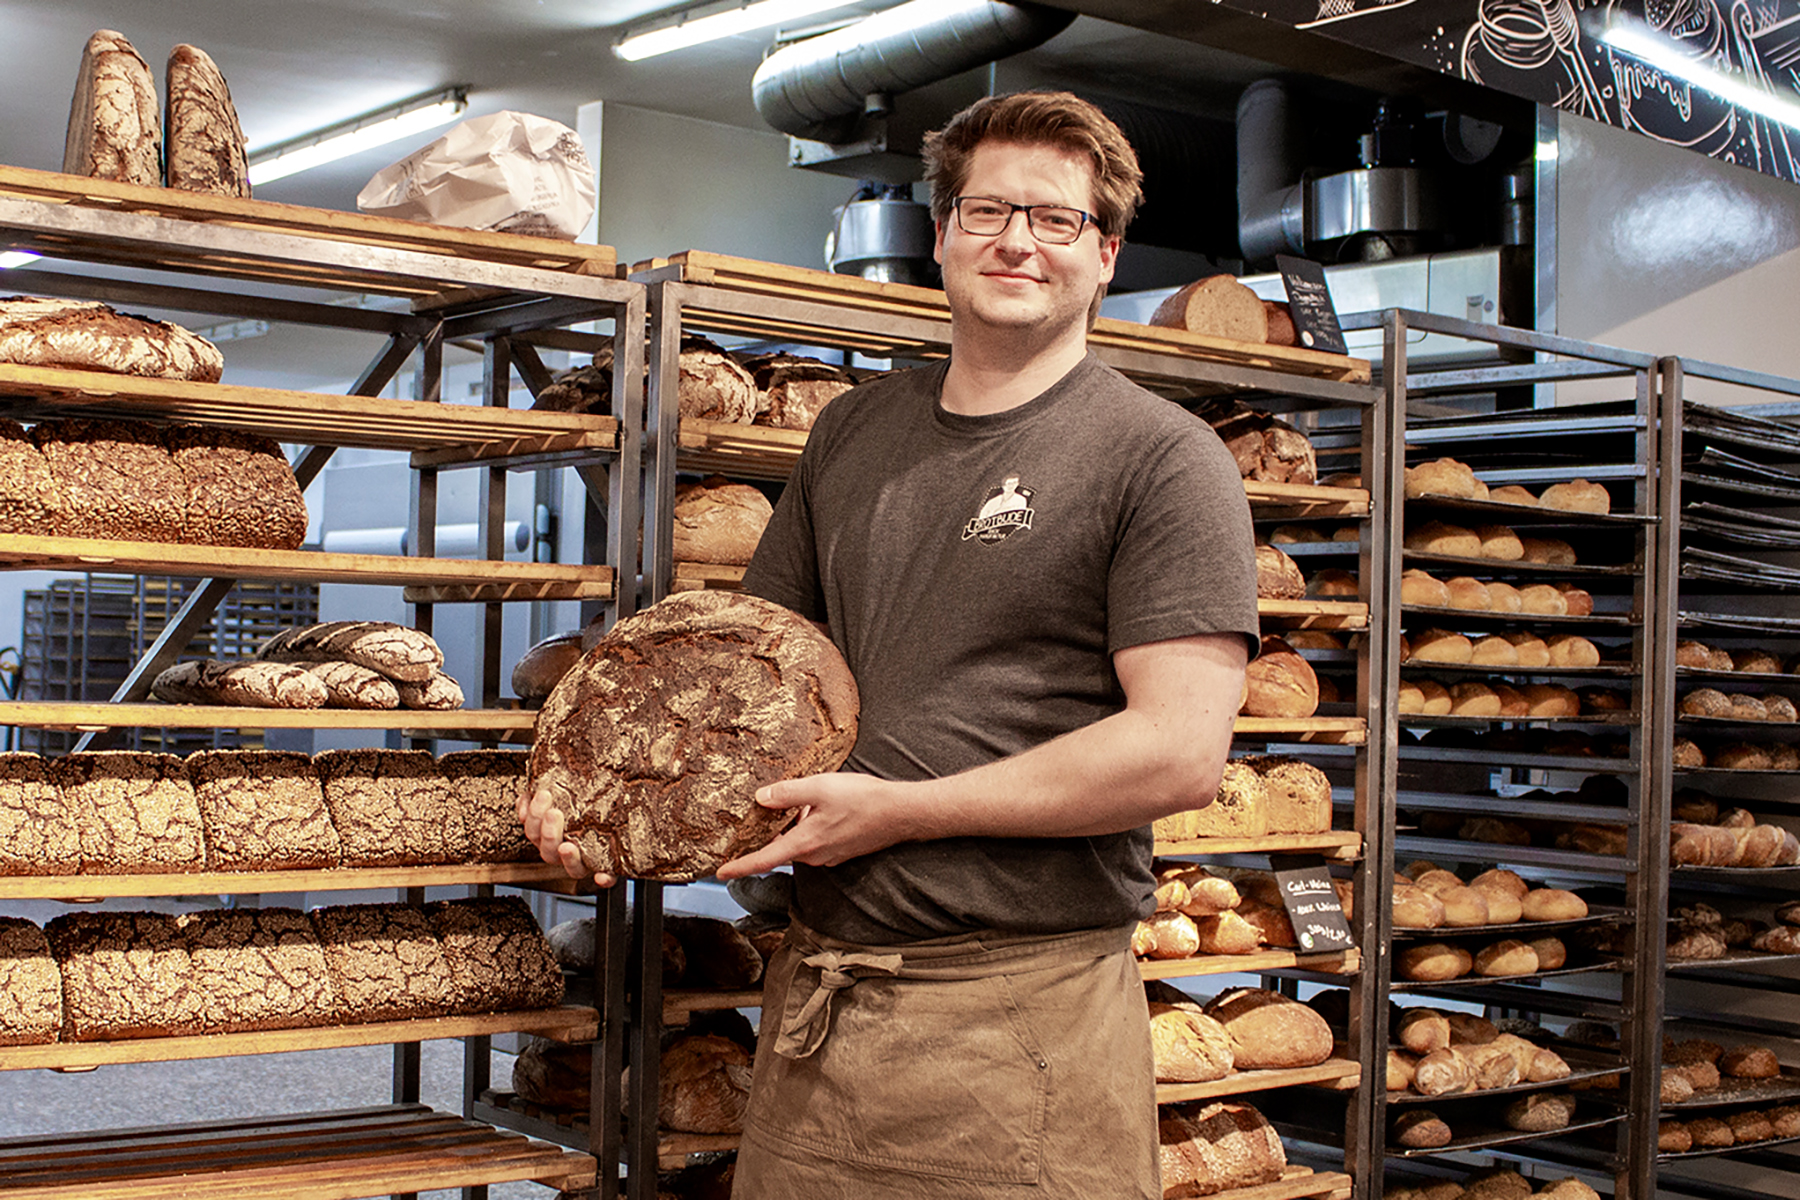 Joona Hellweg ist ein Bäcker in Bremen Nord der ohne Zusatzstoffe arbeitet. Hier steht er in seiner Backstube vor einer Auswahl seiner Brote.